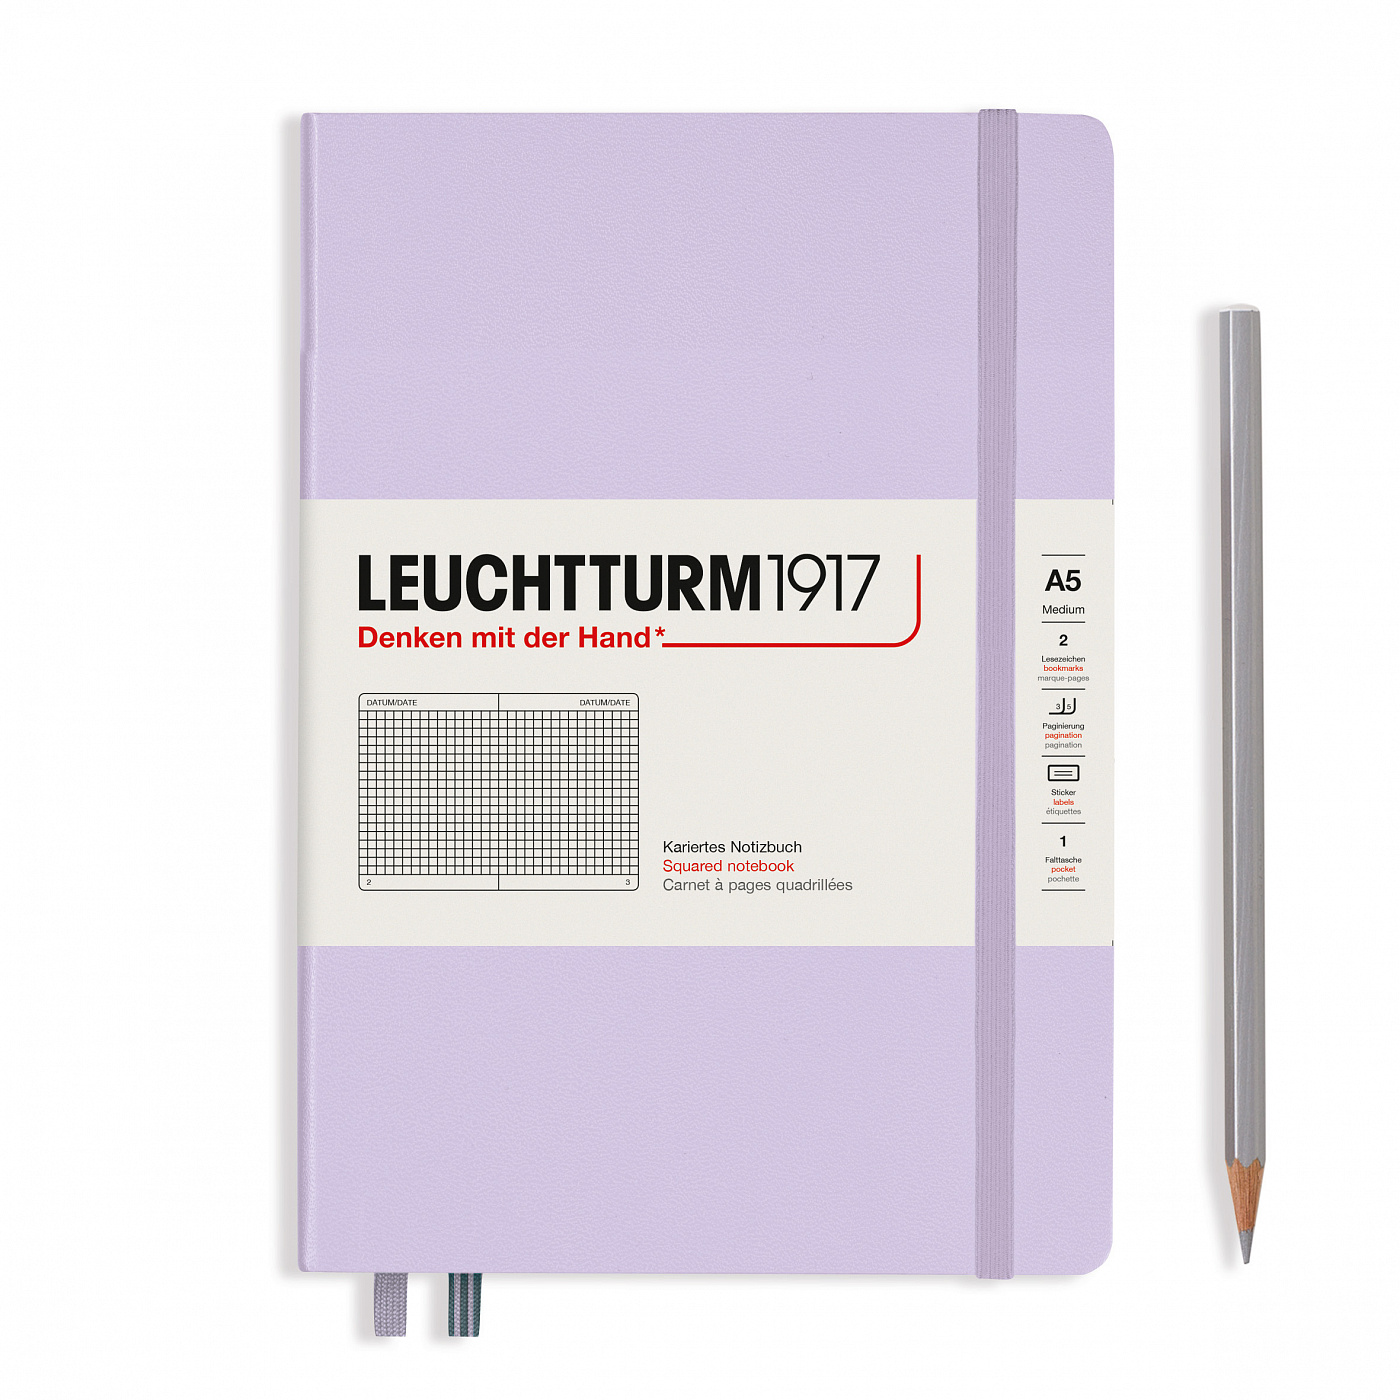 Записная книжка в клетку Leuchtturm A5 251 стр., твёрдая обложка, сиреневый записная книжка воспоминаний leuchtturm несколько строк в день а5 на 5 лет пастельный зеленый